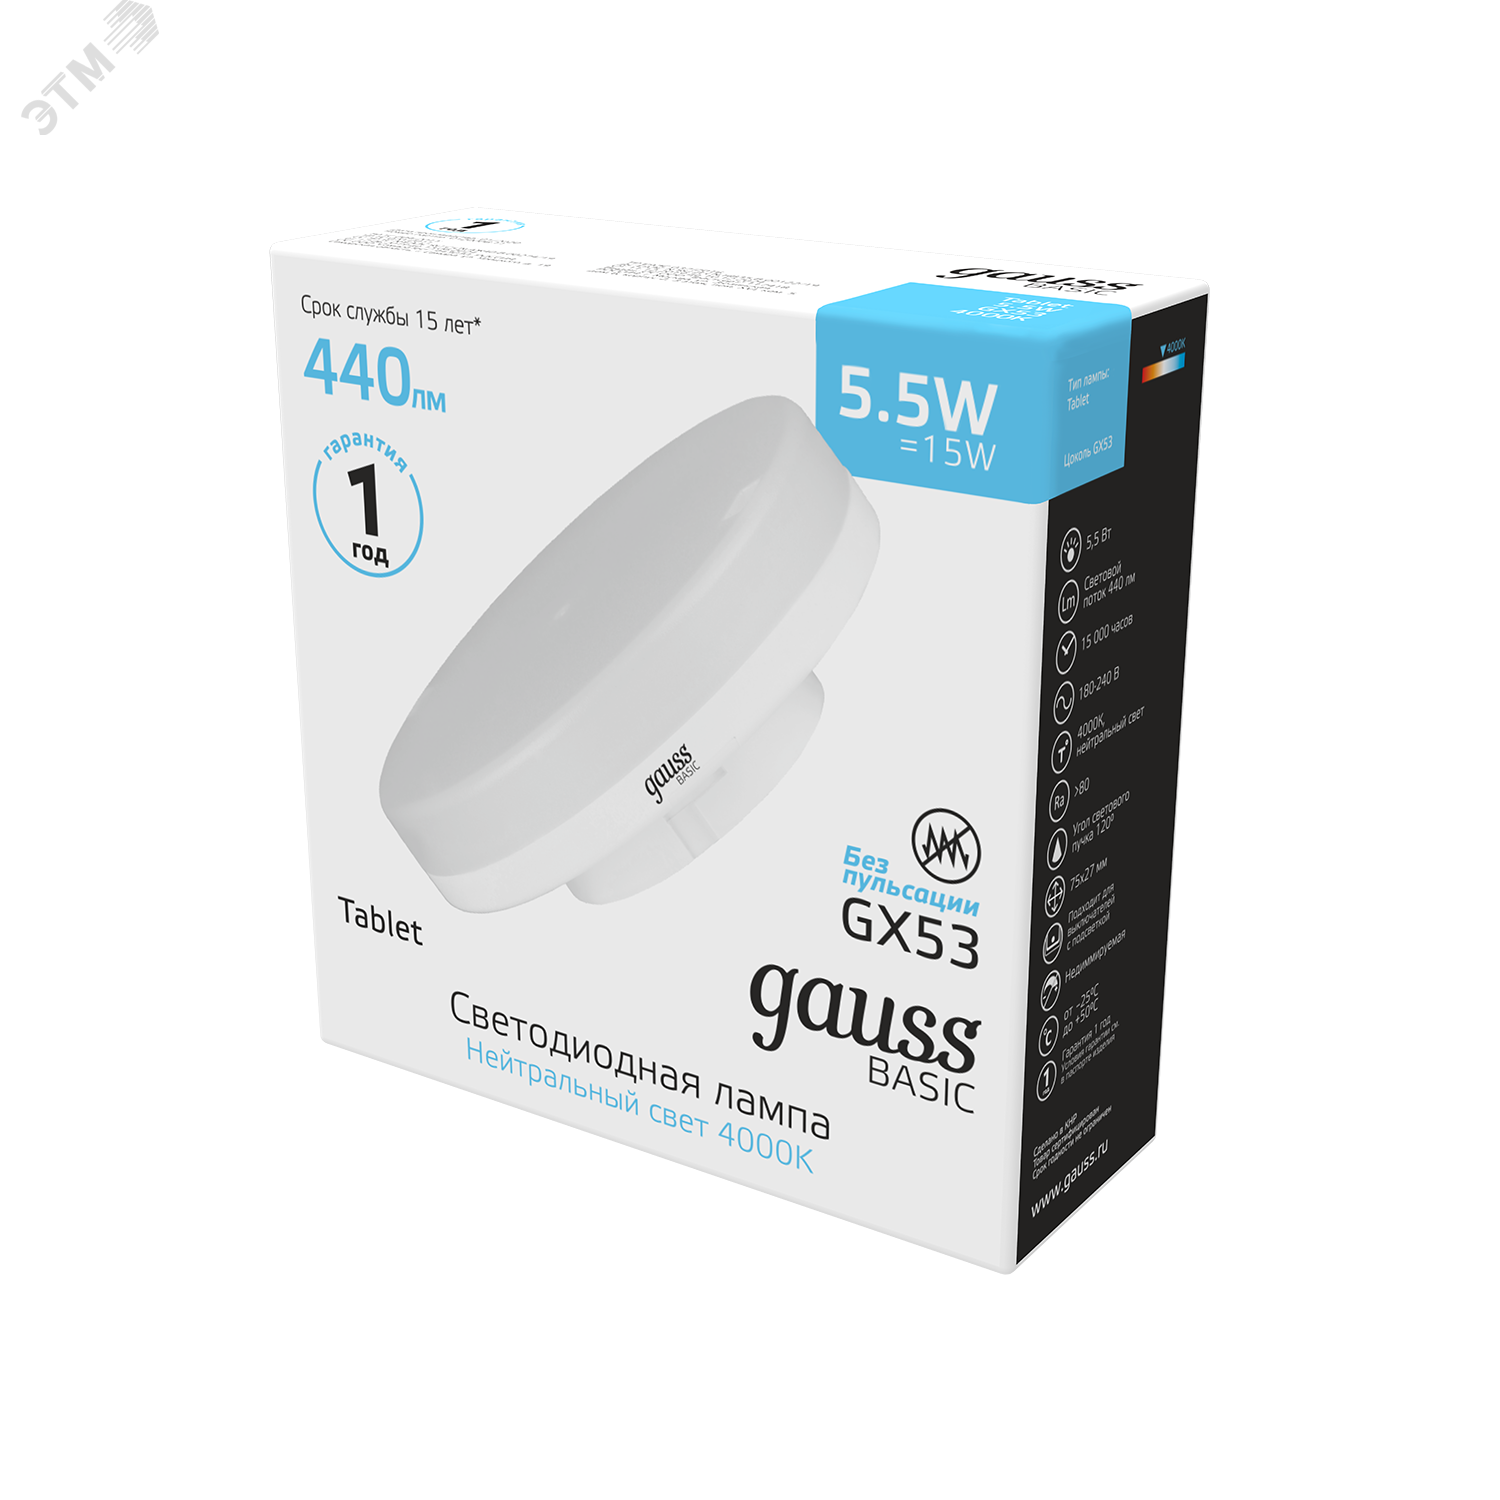 Лампа светодиодная LED 5.5 Вт440 Лм 4100К белая GX53 таблетка Basic Gauss 10849262 GAUSS - превью 3